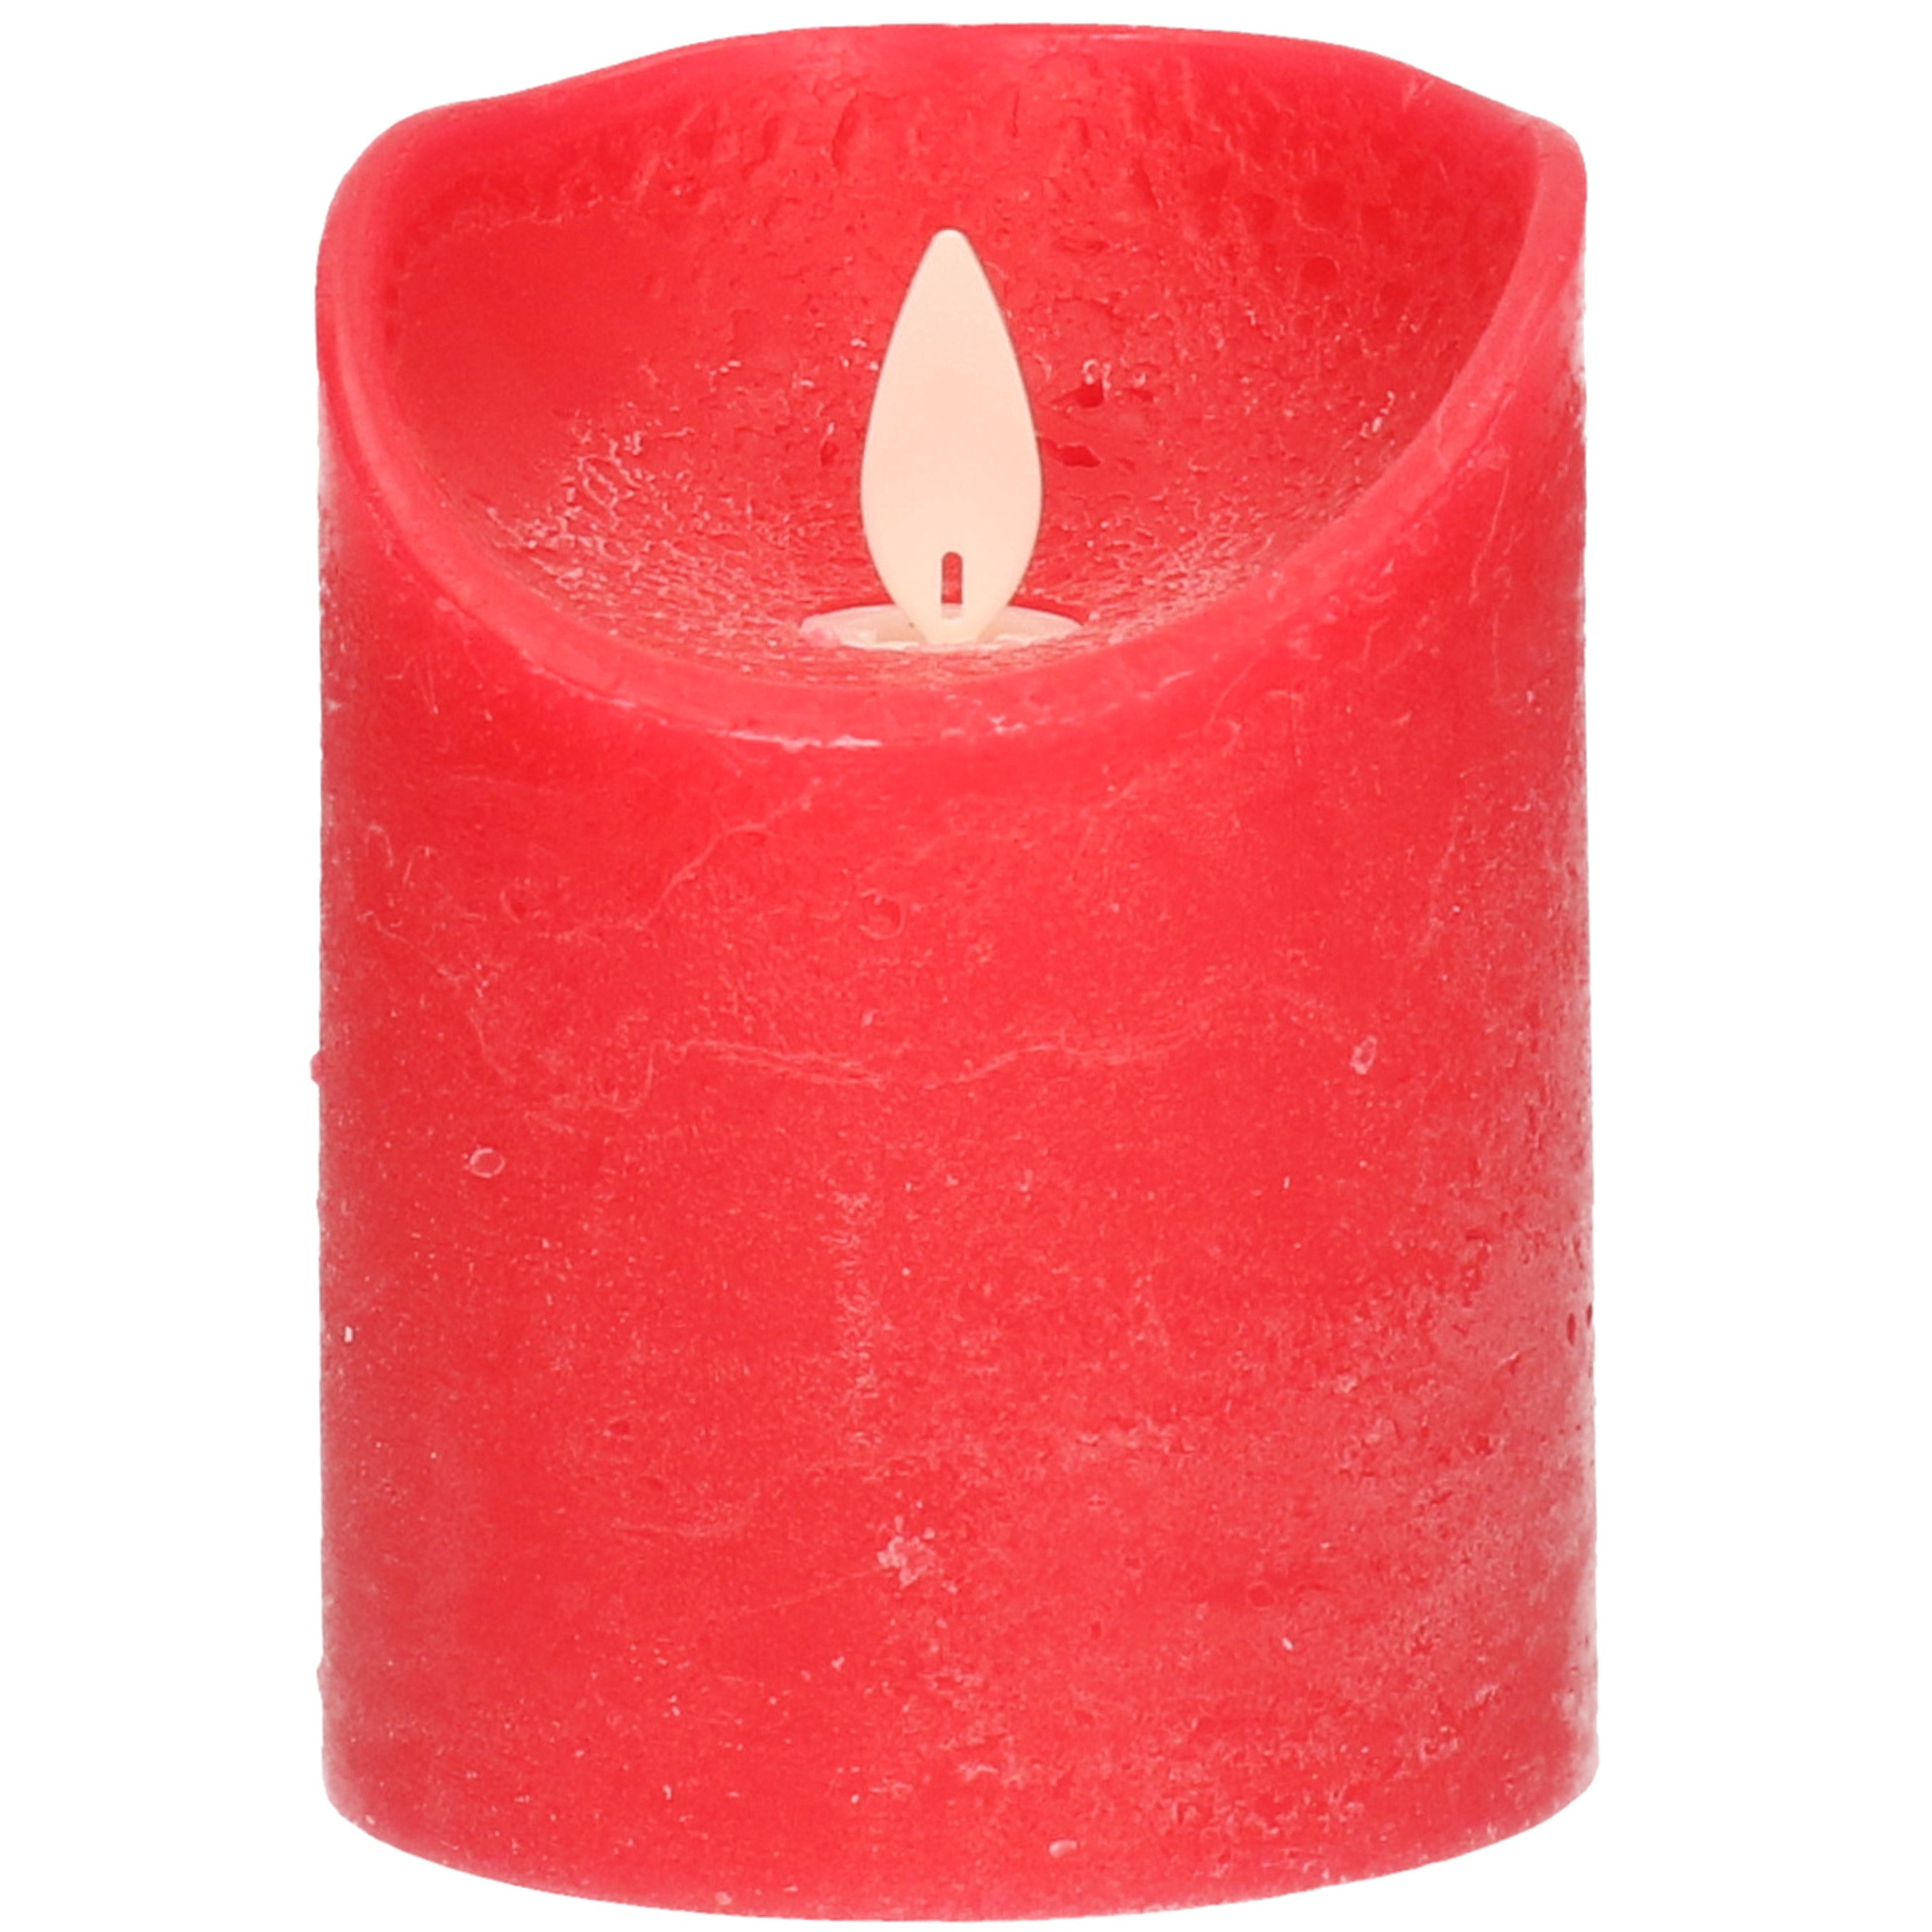 1x Rode LED kaarsen-stompkaarsen met bewegende vlam 10 cm